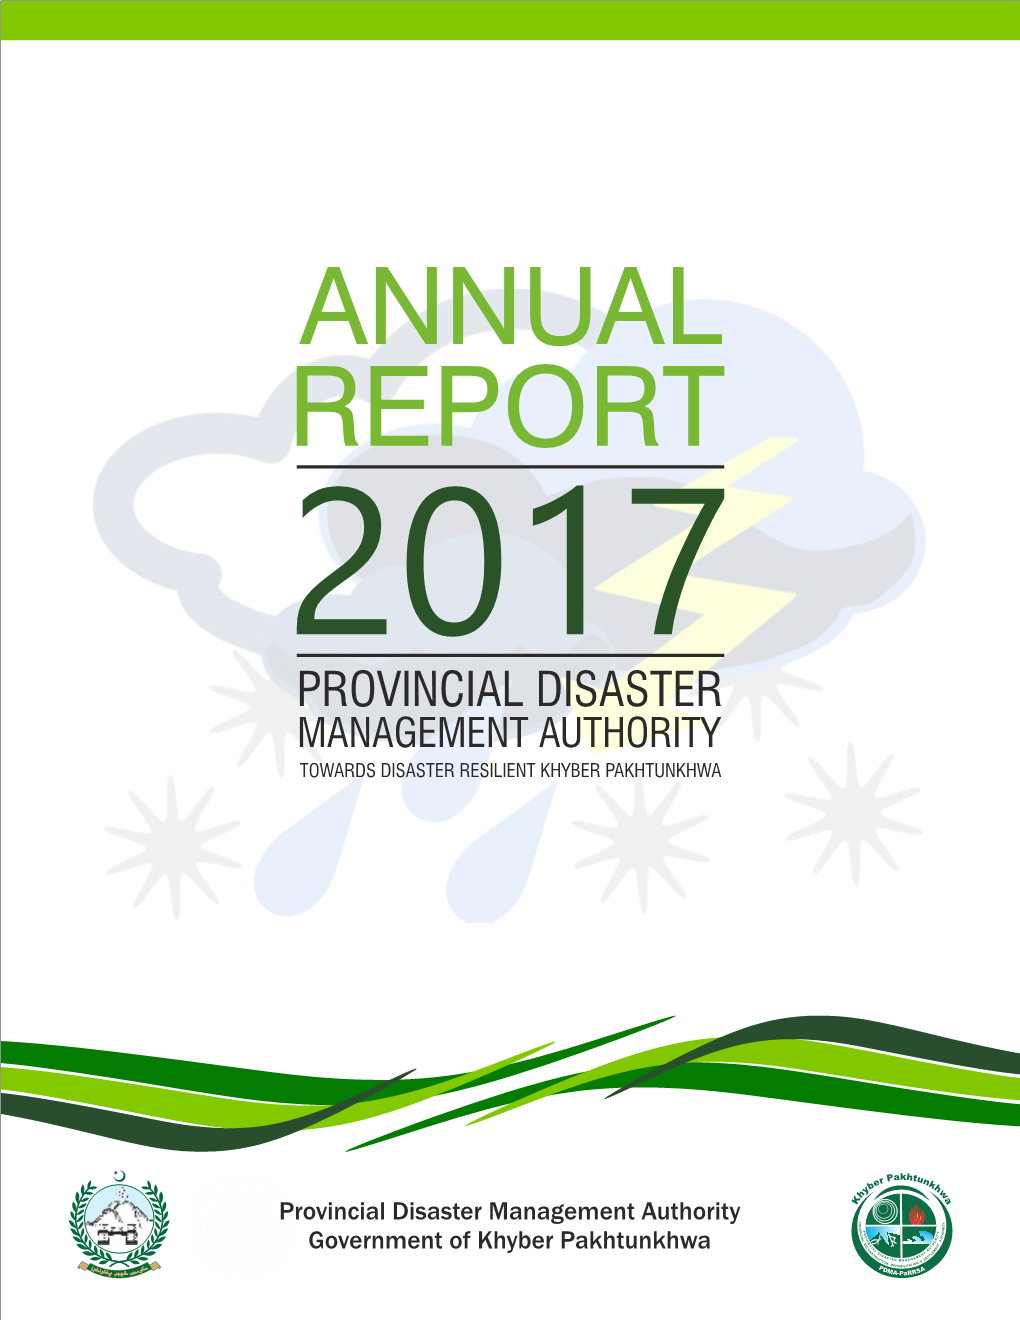 Annual Report 2017.Pdf